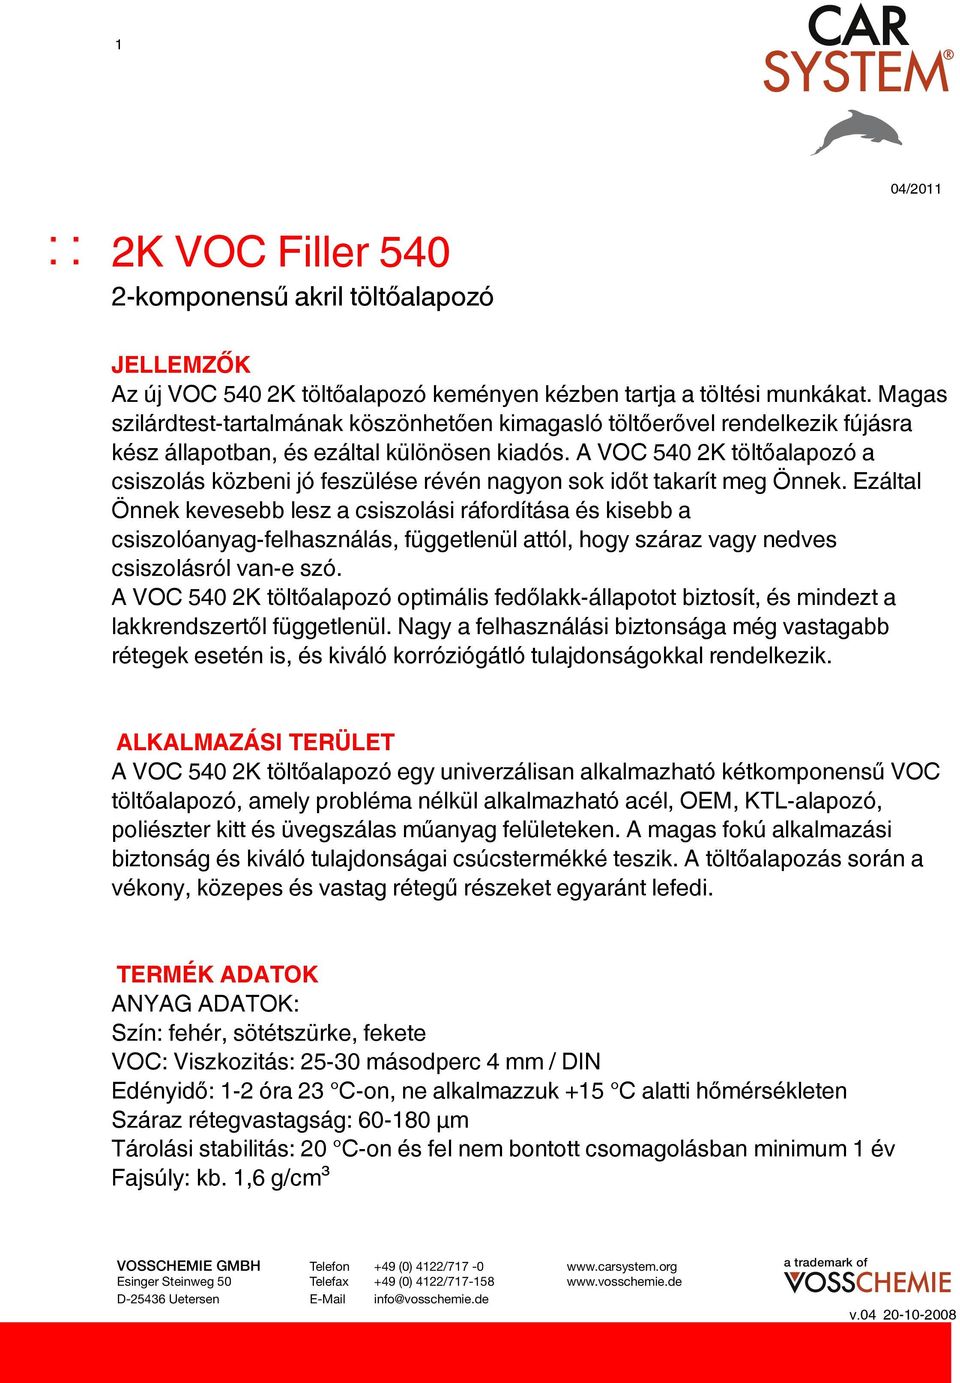 A VOC 540 2K töltőalapozó a csiszolás közbeni jó feszülése révén nagyon sok időt takarít meg Önnek.